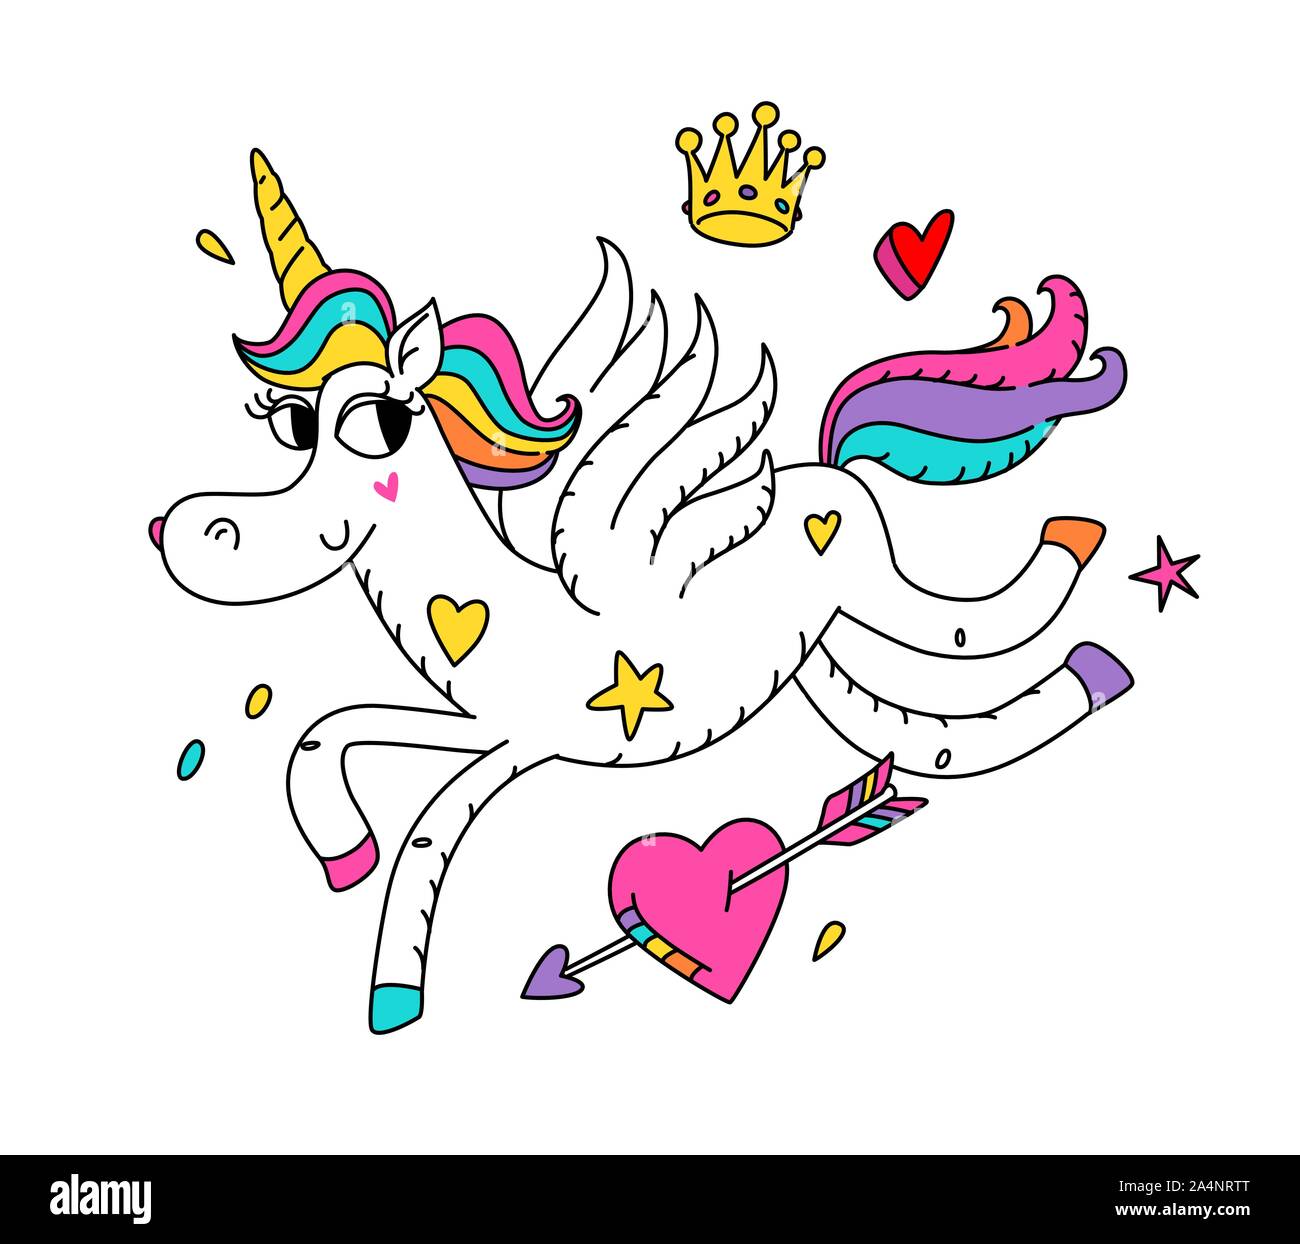 Ilustración de un unicornio mágico con alas. Vector. Cartoon hero lindo caballo con un cuerno. Kawaii personaje. Criatura mítica, simboliza chast Ilustración del Vector